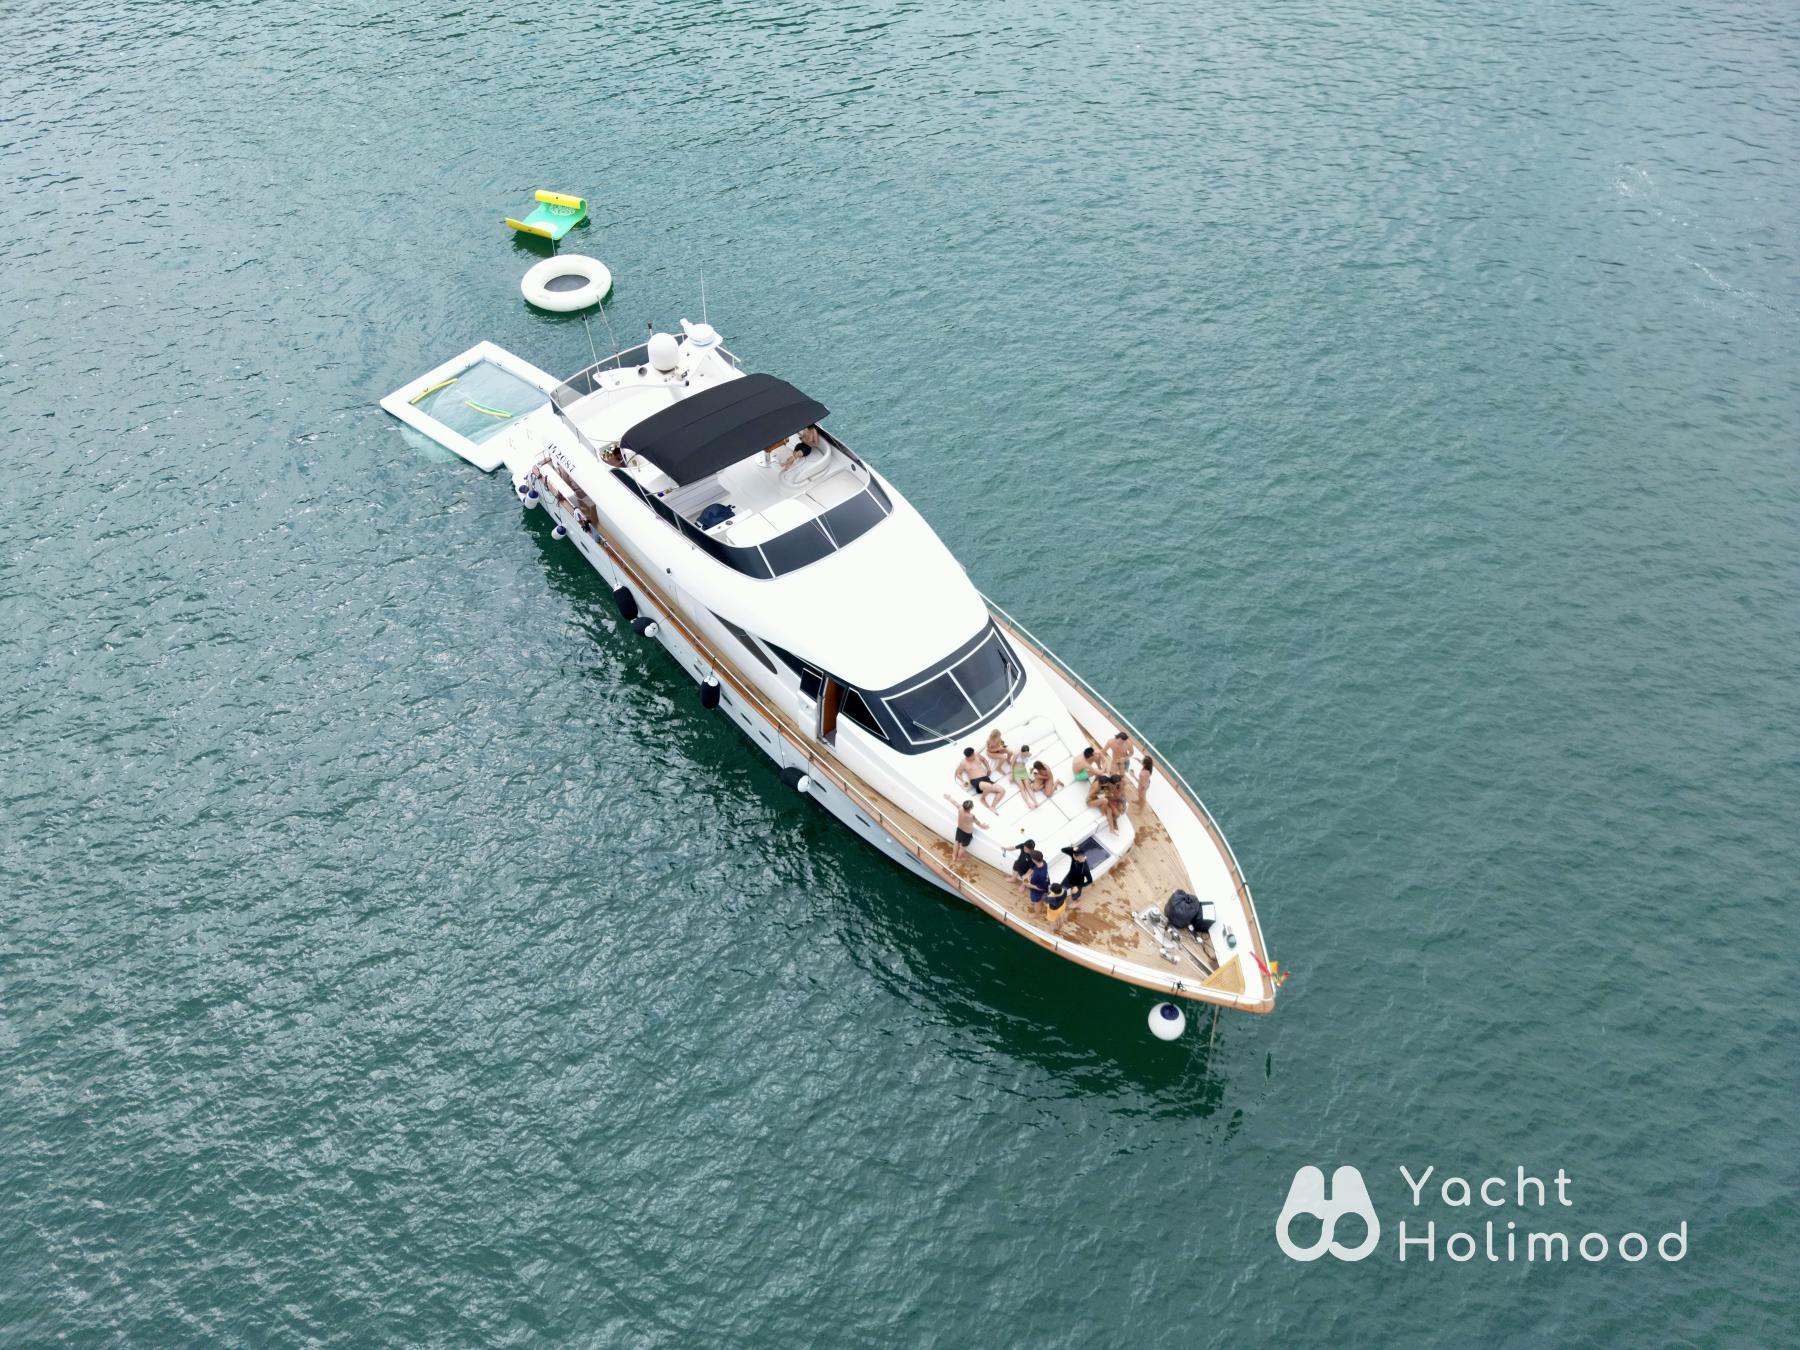 SL05 豪華意大利56人遊艇| 五星級酒店體驗| 日間出租 2